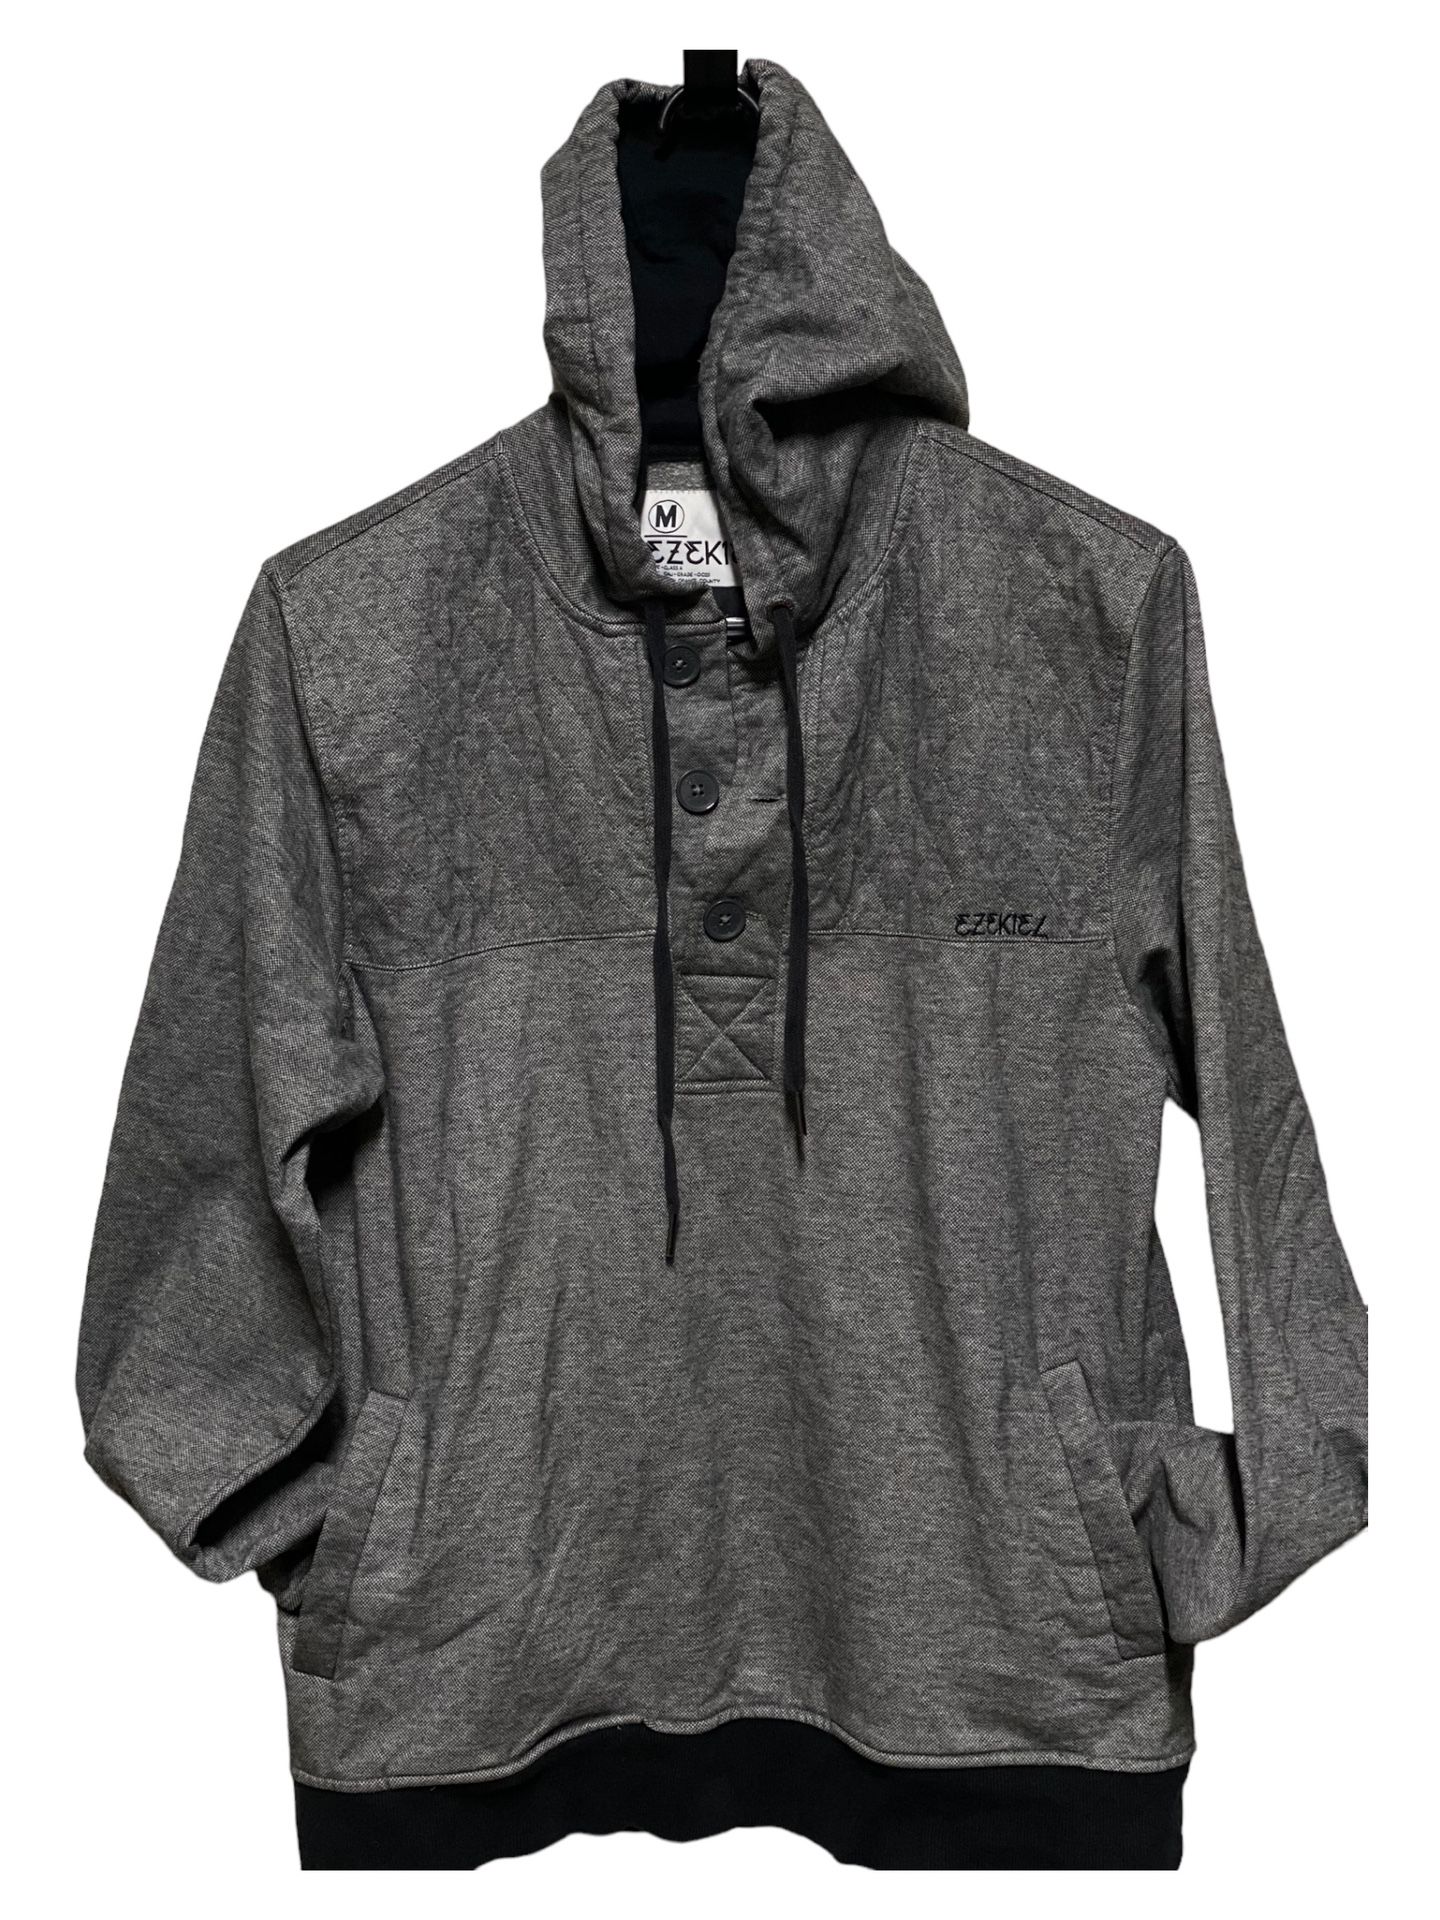 Ezekiel Gray Toggle Loop Pullover Hoodie Sweater Sweatshirt Men's Size Med  